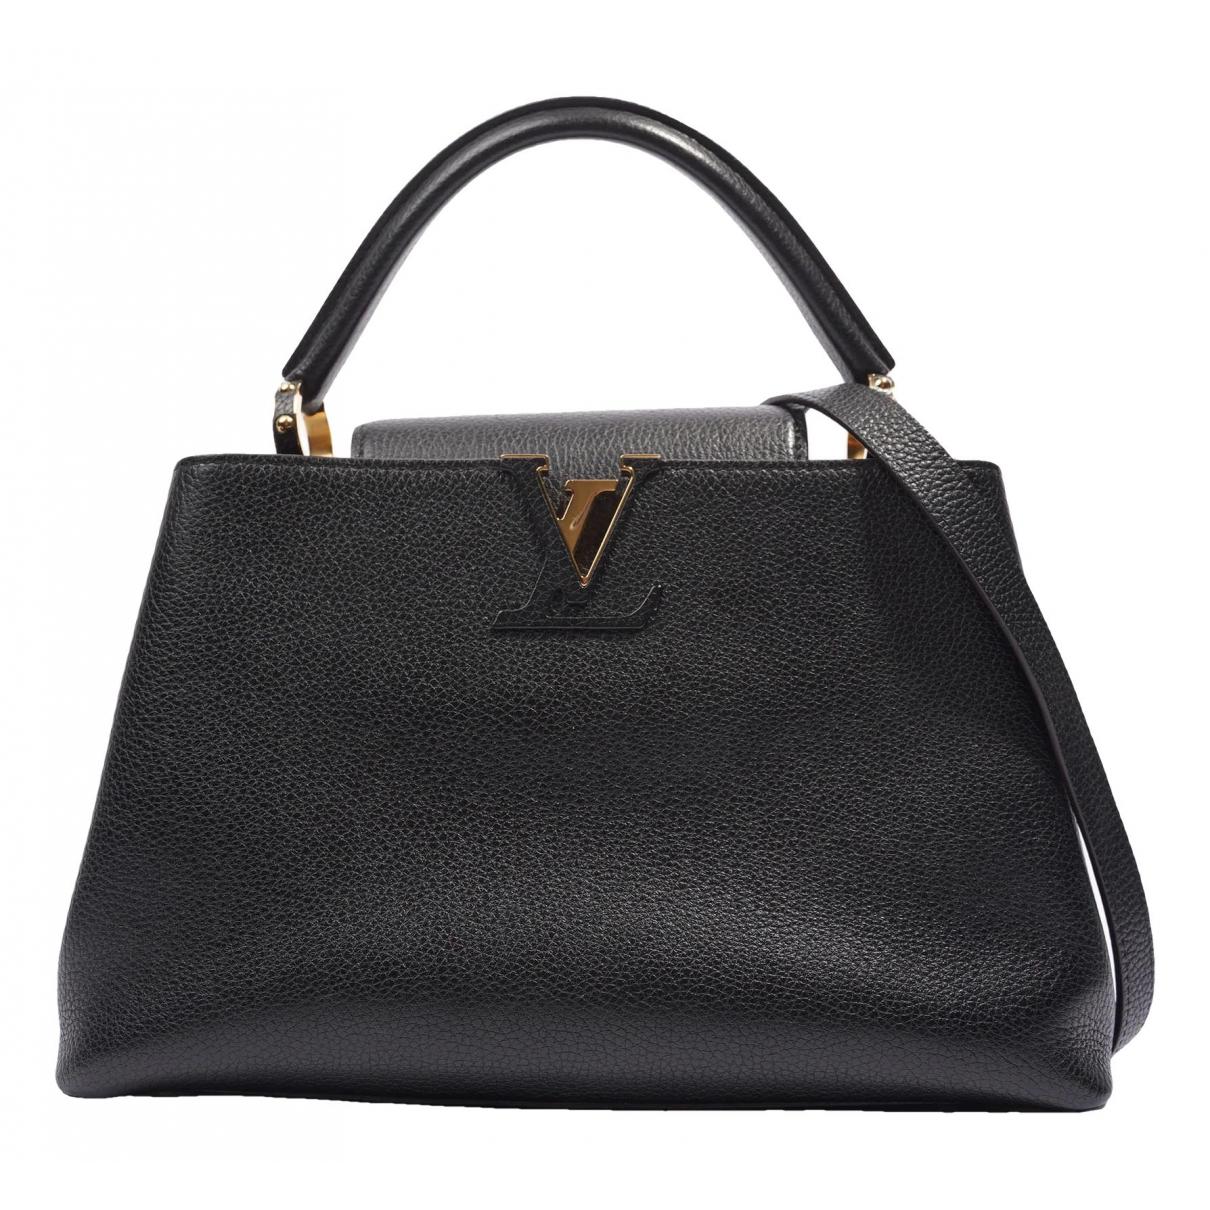 Louis Vuitton - Authenticated Capucines Handbag - Leather Black Plain for Women, Never Worn